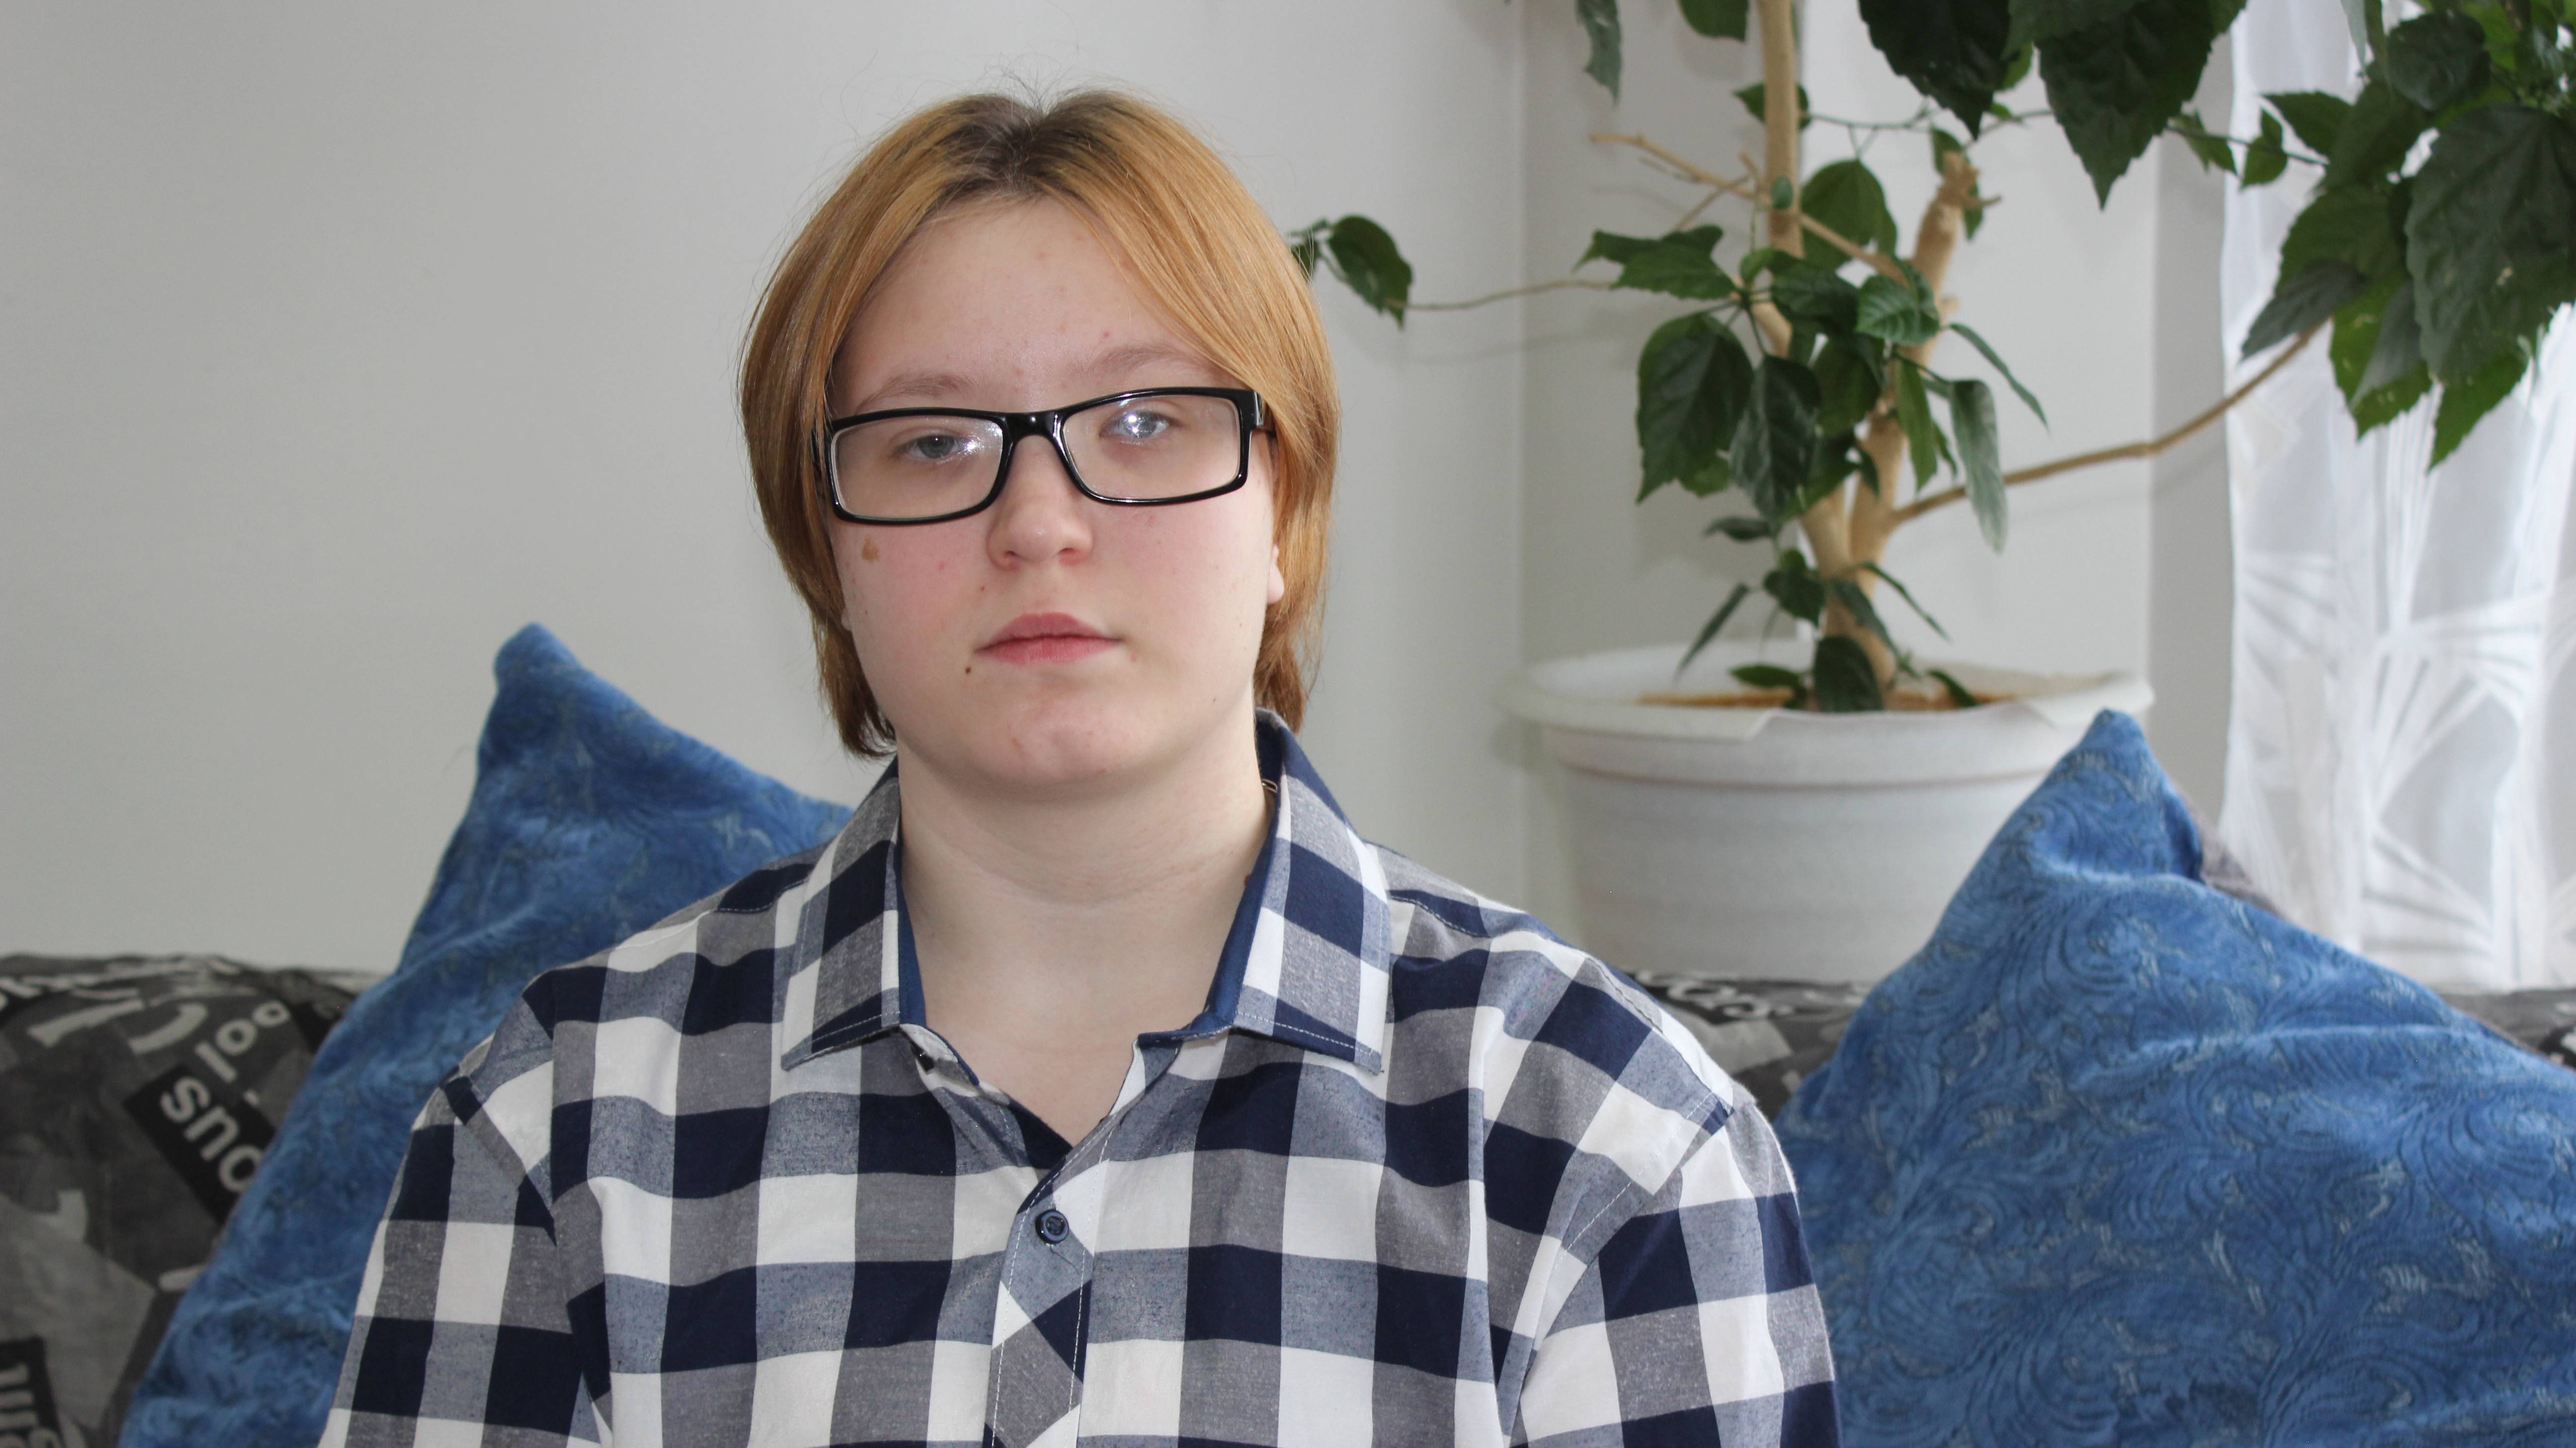 Ольга, 16 лет (видео-анкета)